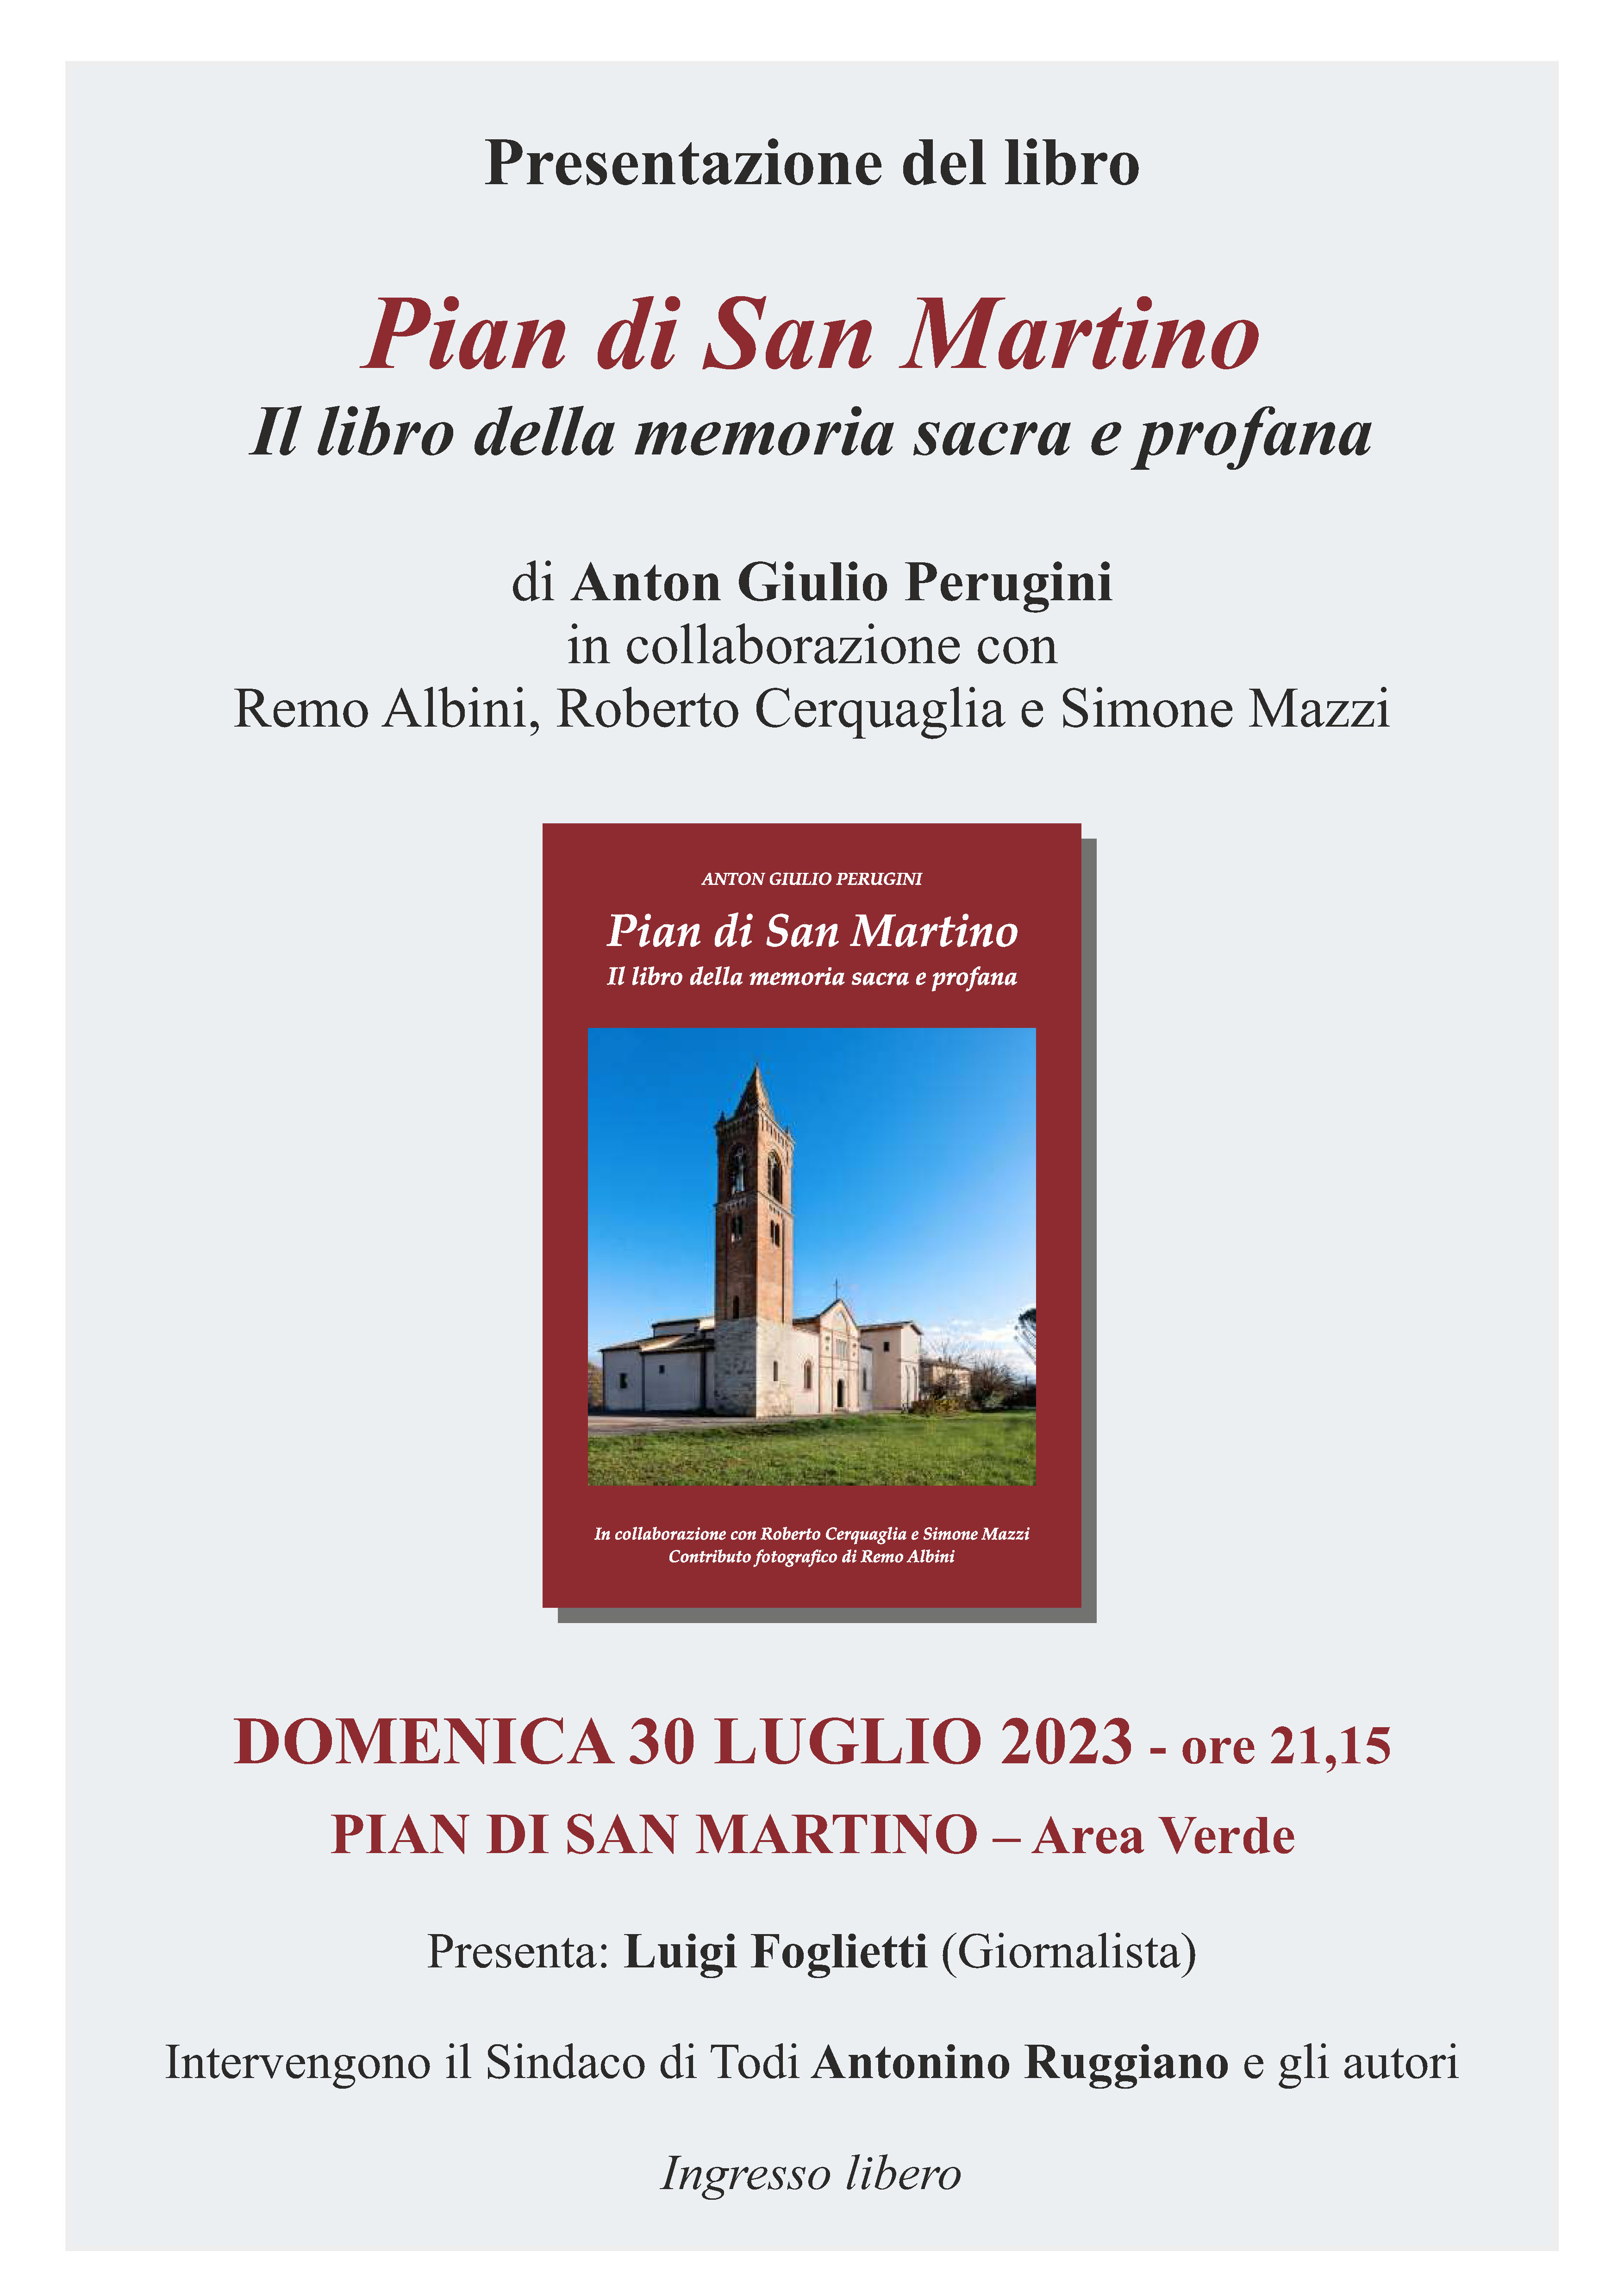 Cultura – Todi, “Pian di San Martino - Il libro della memoria sacra e profana”